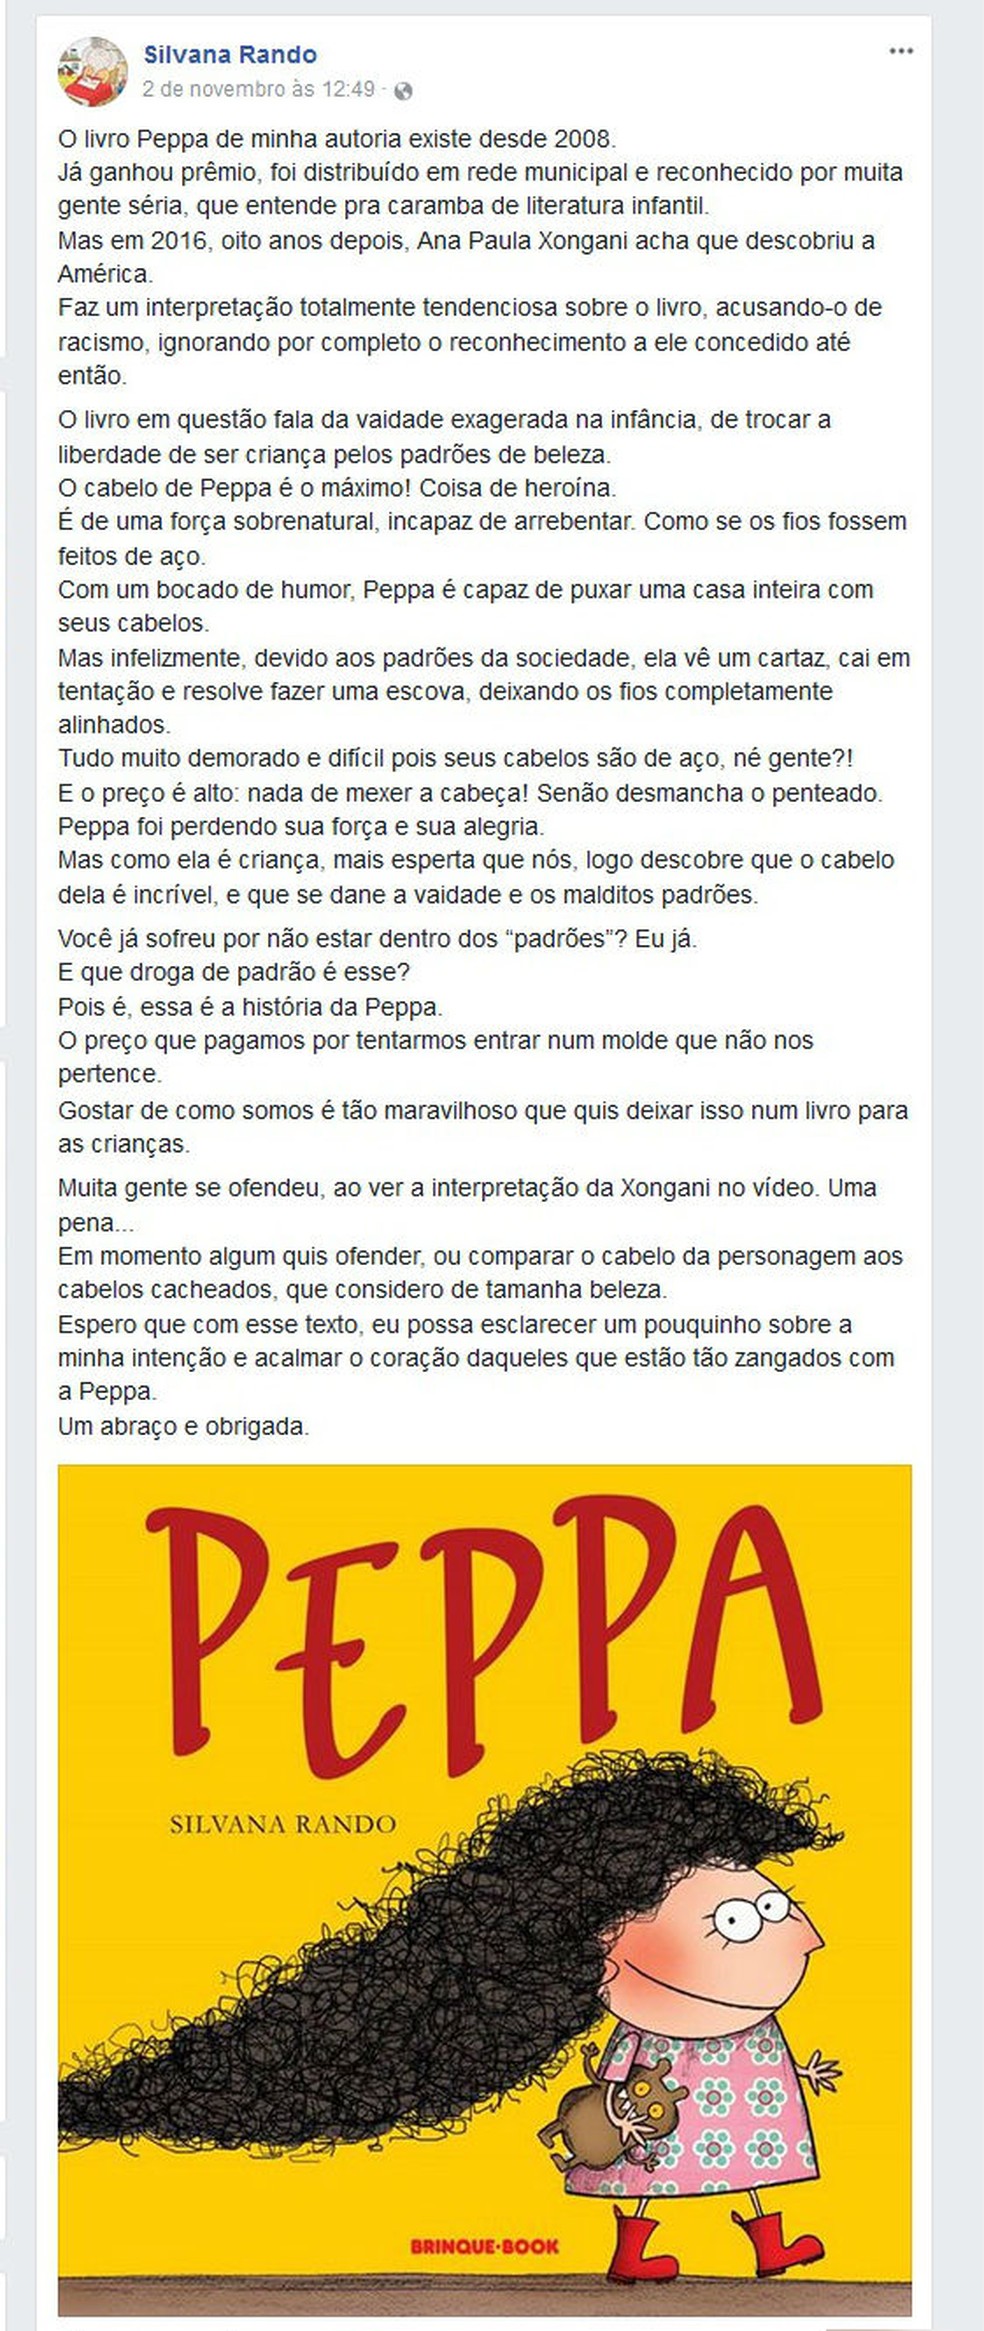 Escritora Silvana Rando publicou texto em defesa do livro 'Peppa', mas conta que recebeu uma enxurrada de críticas e xingamentos (Foto: Reprodução/Facebook)